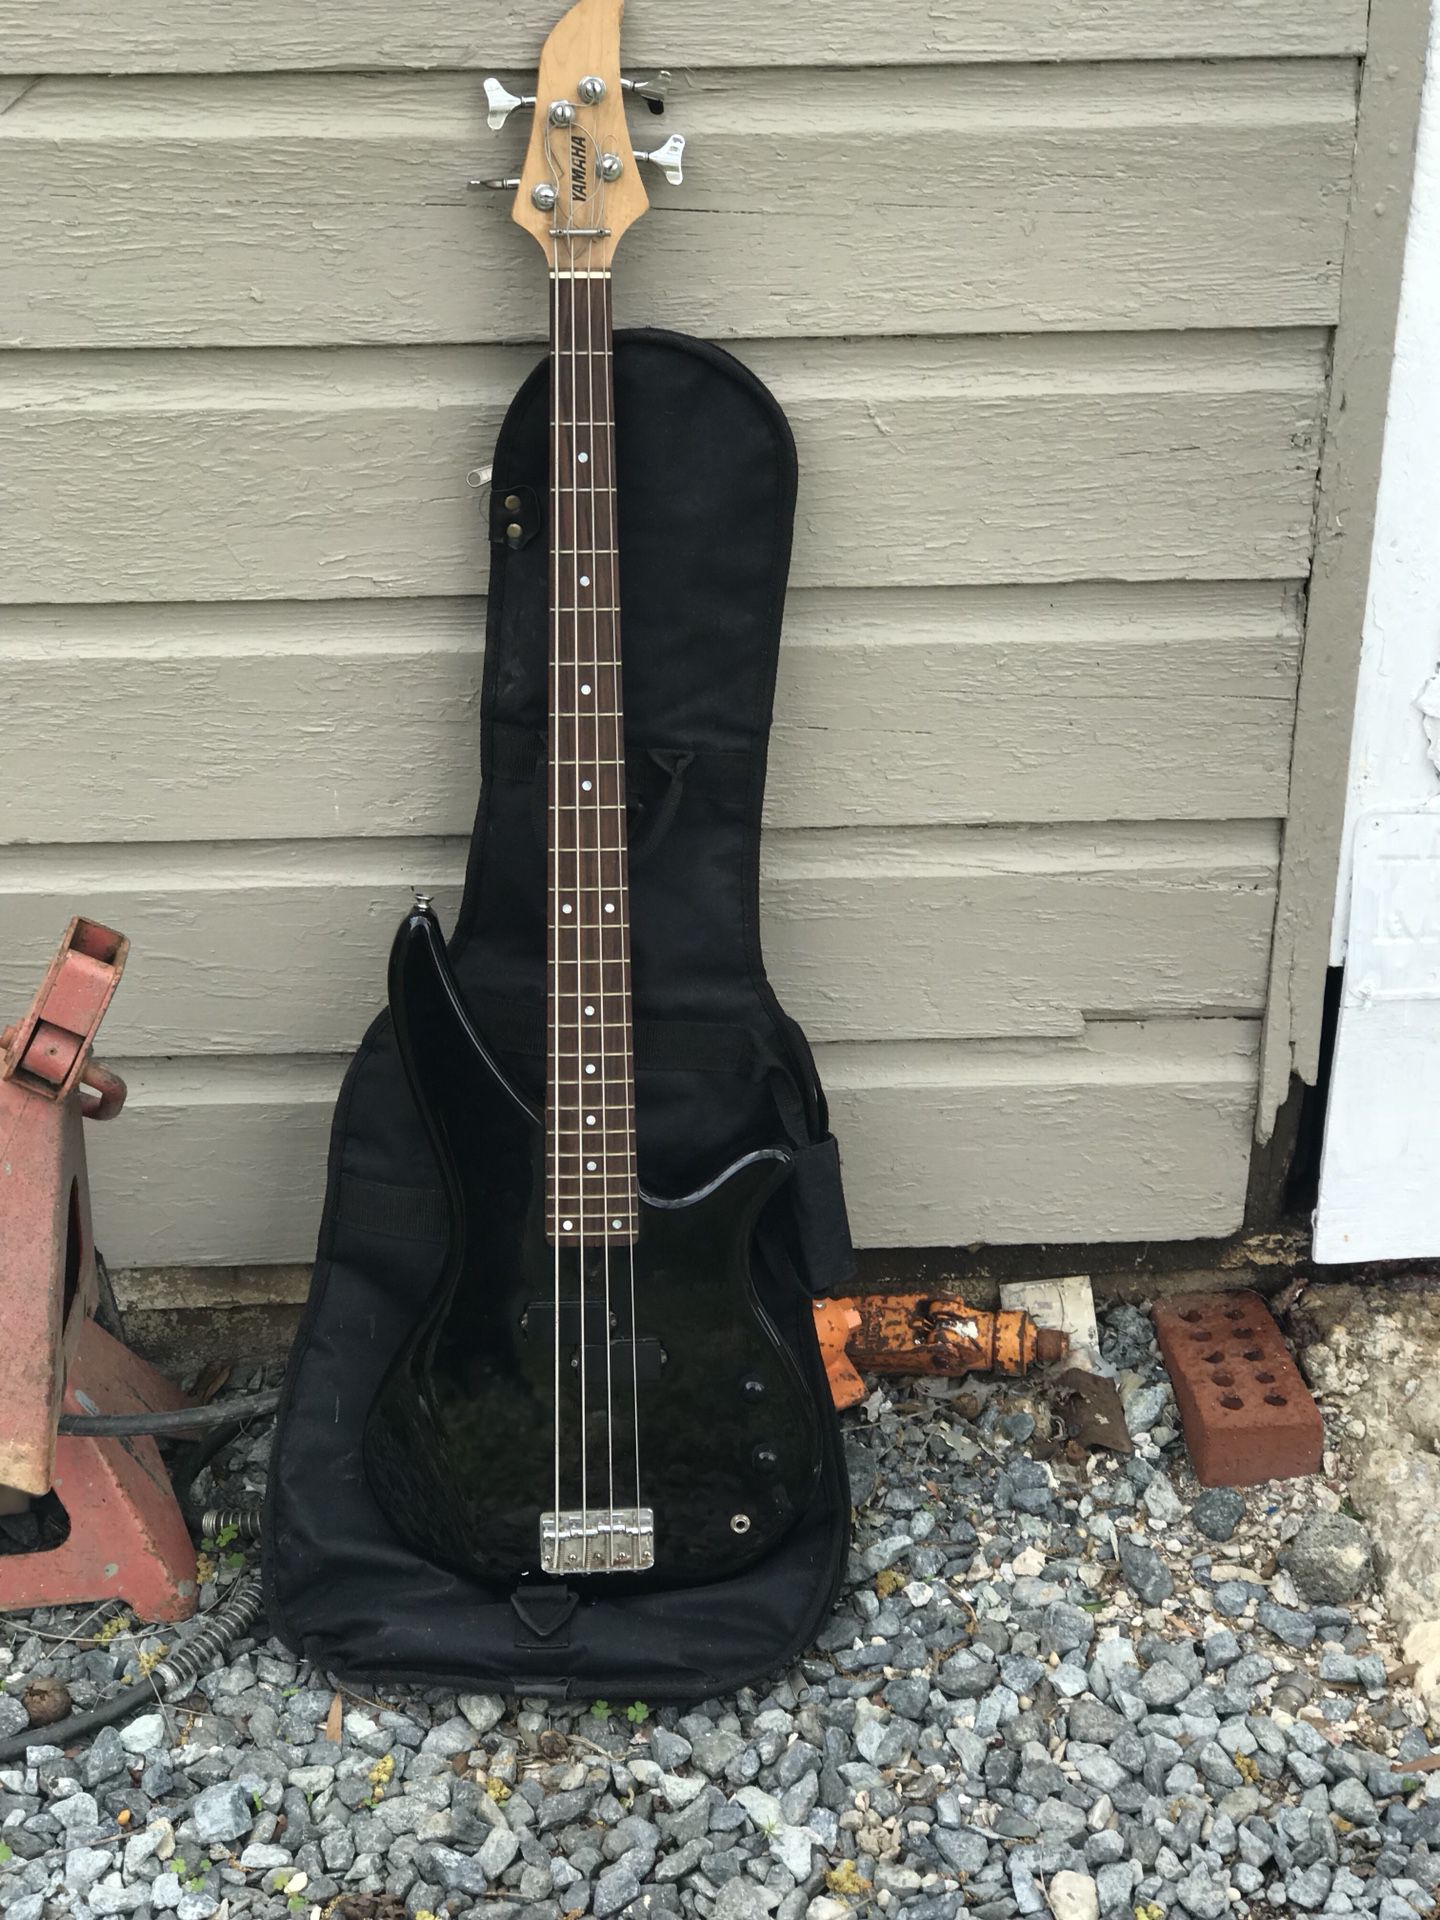 Guitar and guitar bag